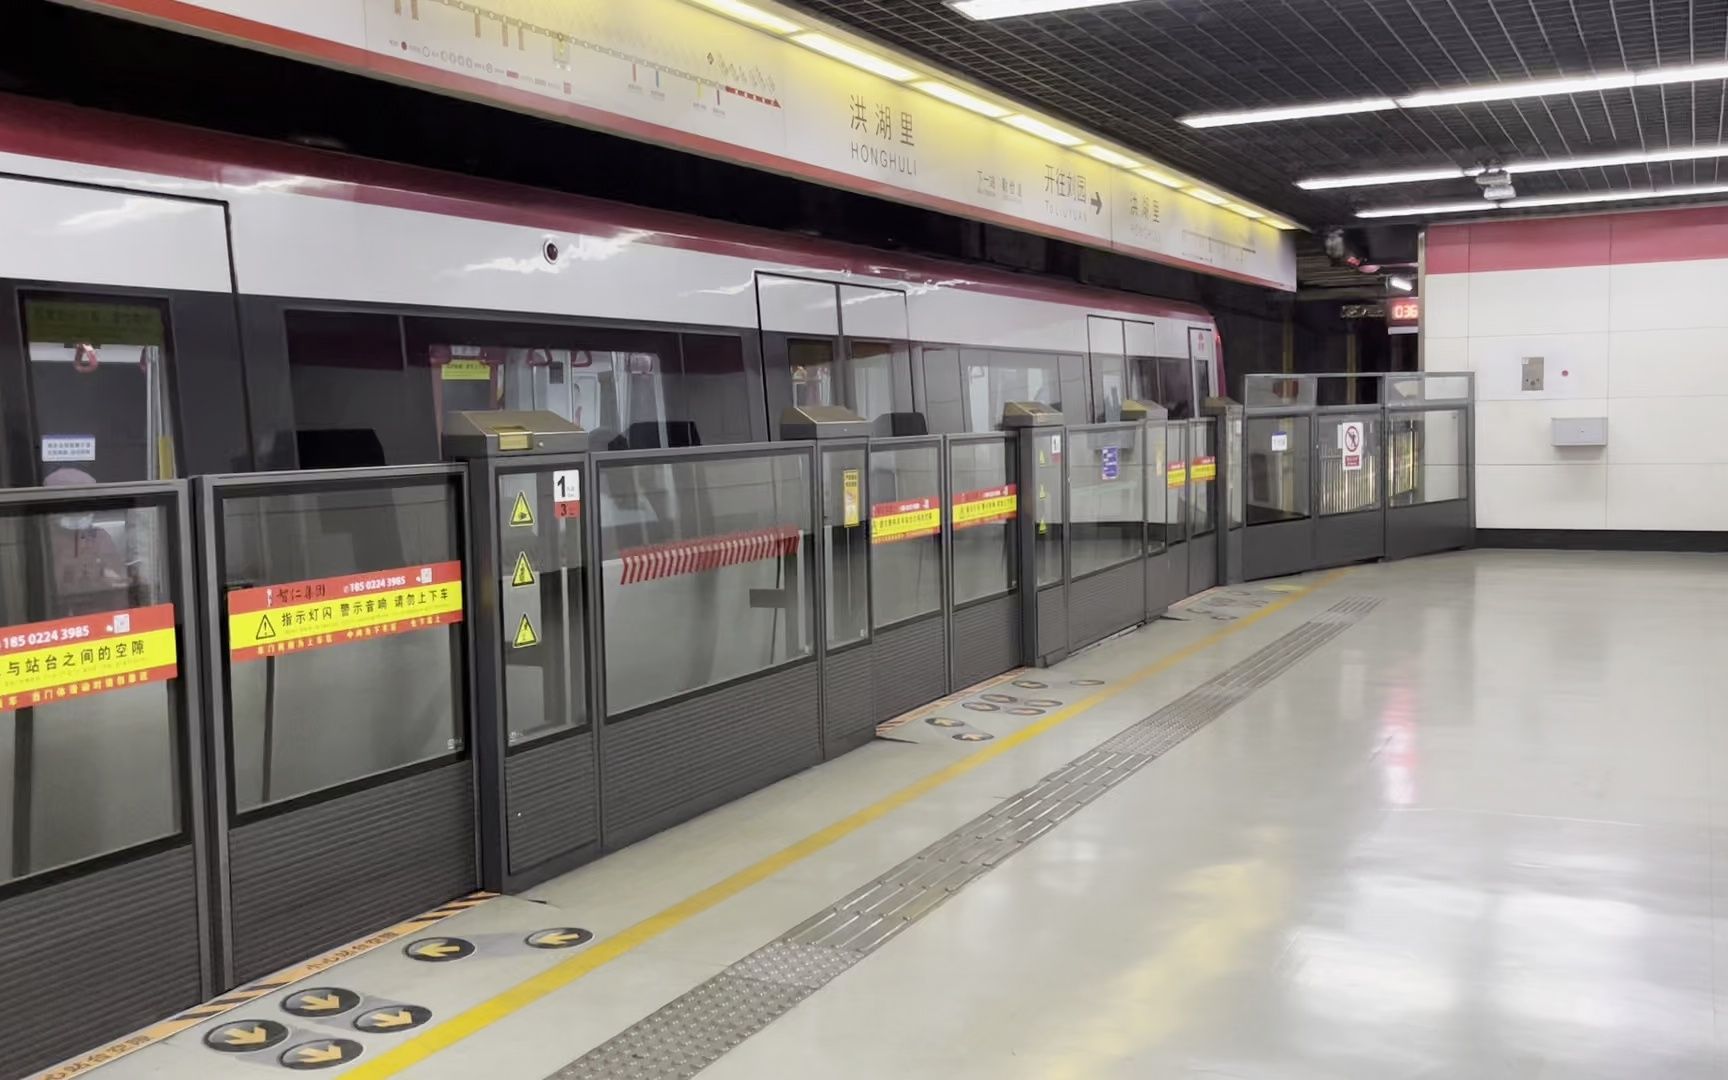 【天津地铁】时代和三菱的混响 1号线新老车几乎同时出站会发生什么？